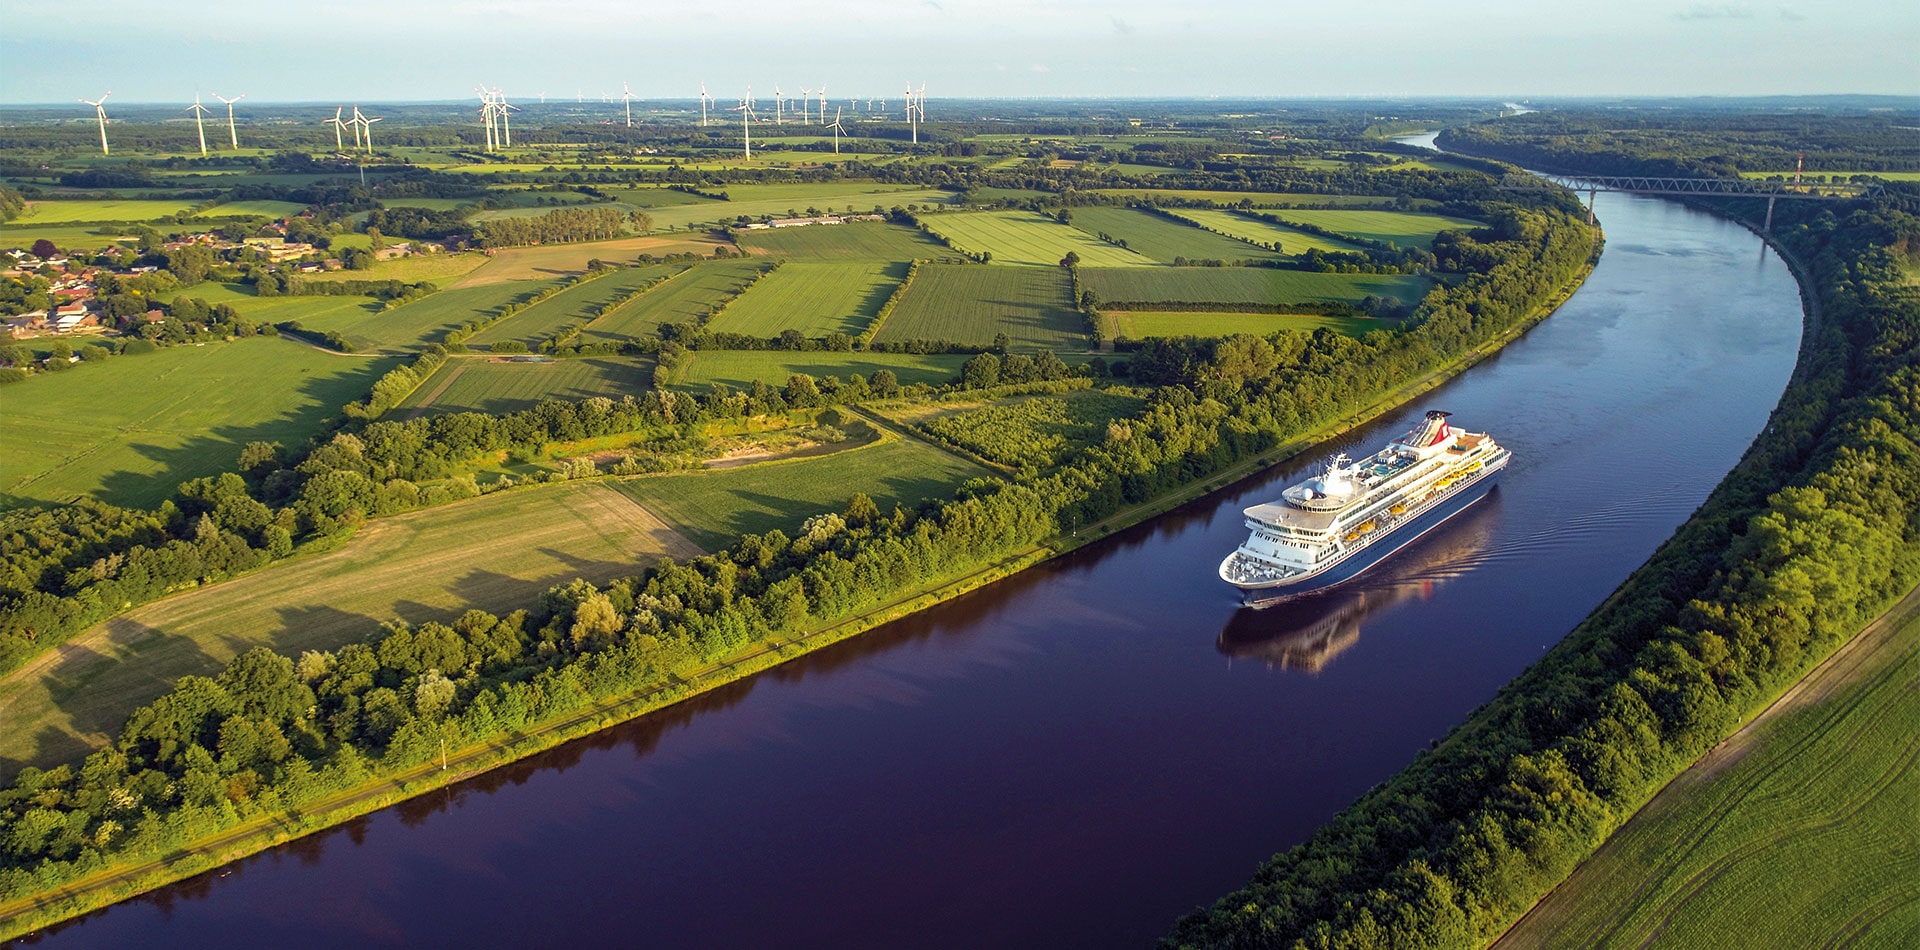 Balmoral cruising the Kiel canal, Germany